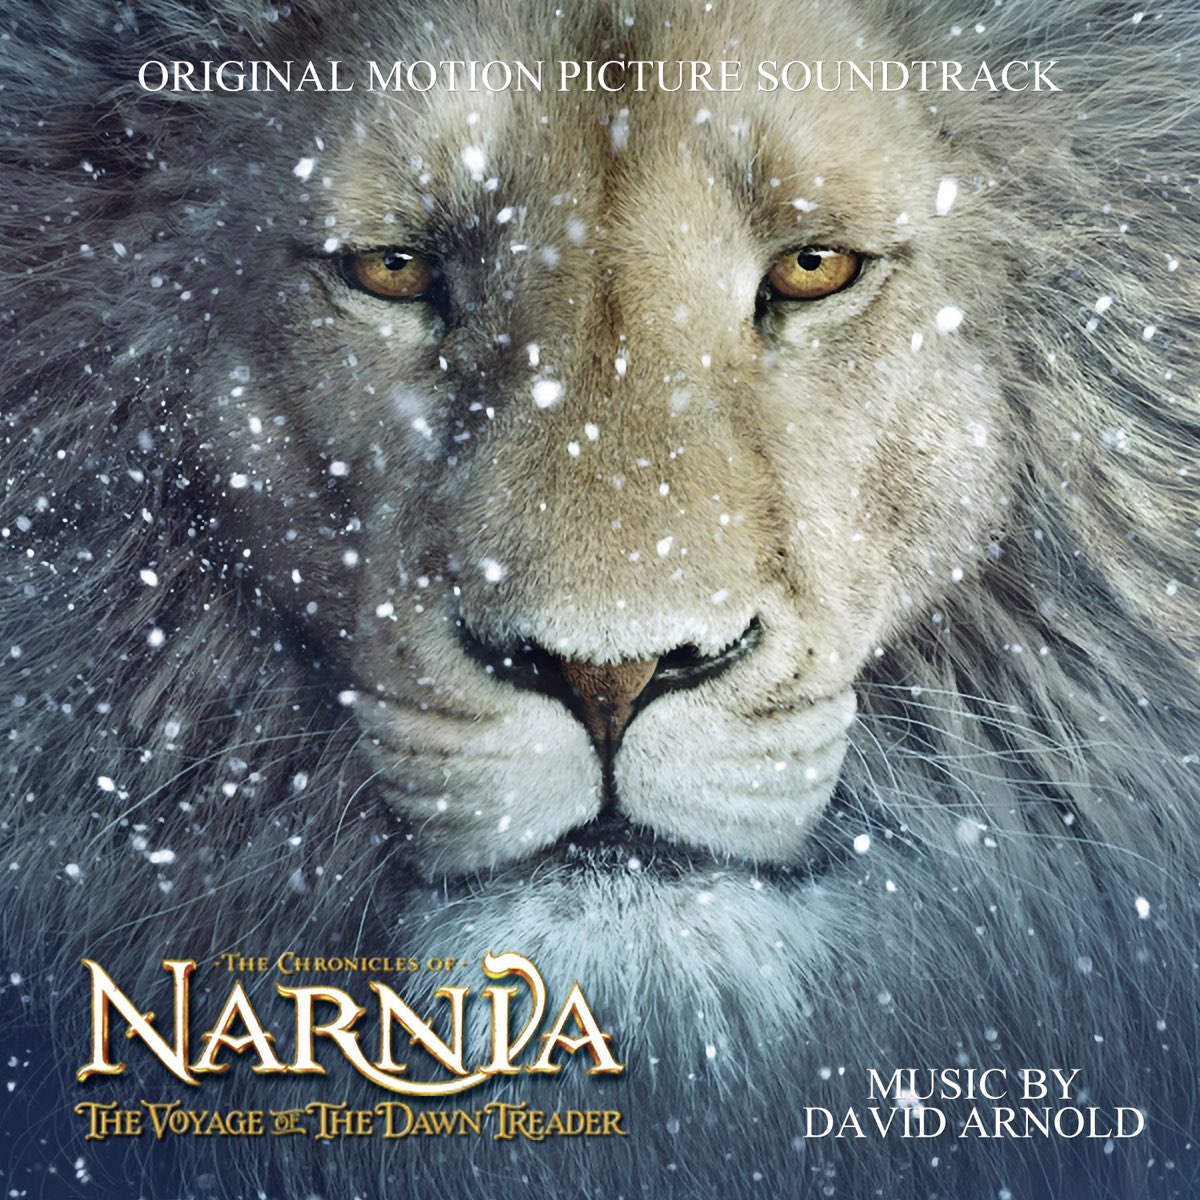 10 músicas inspiradas nas Crônicas de Nárnia - Narniano